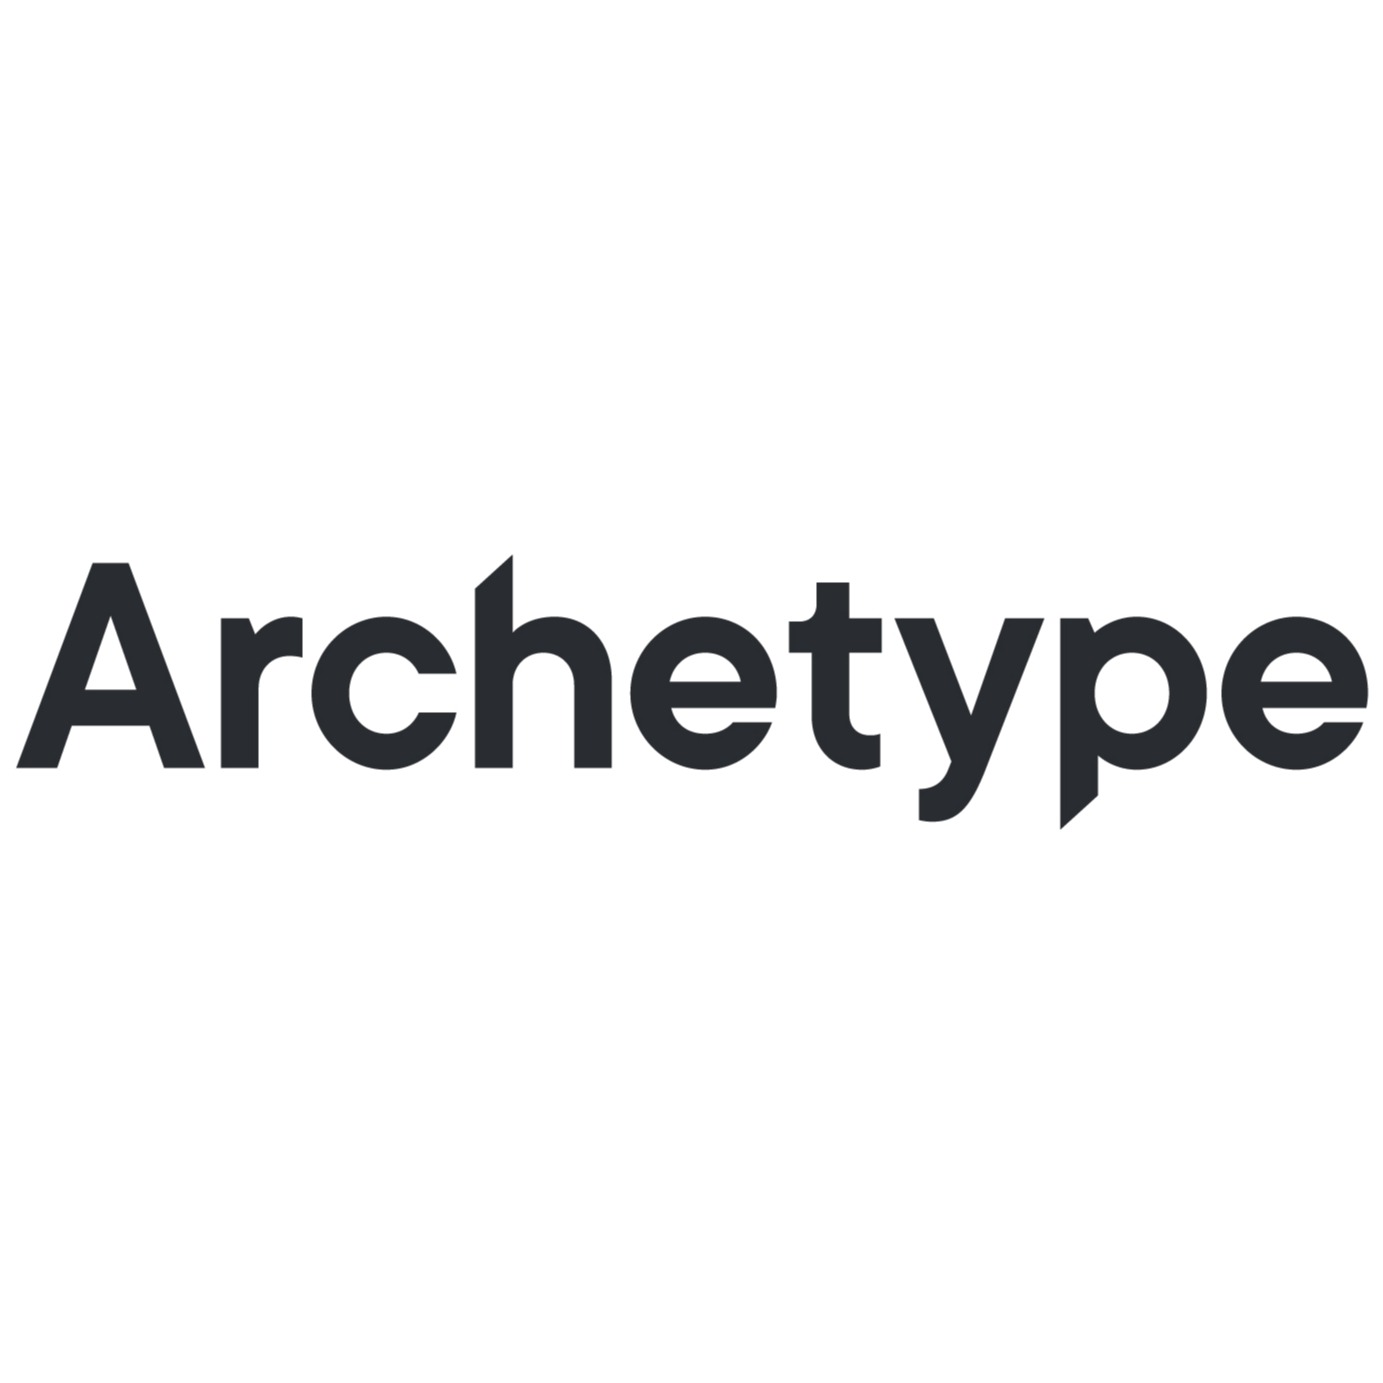 Archetyp market link